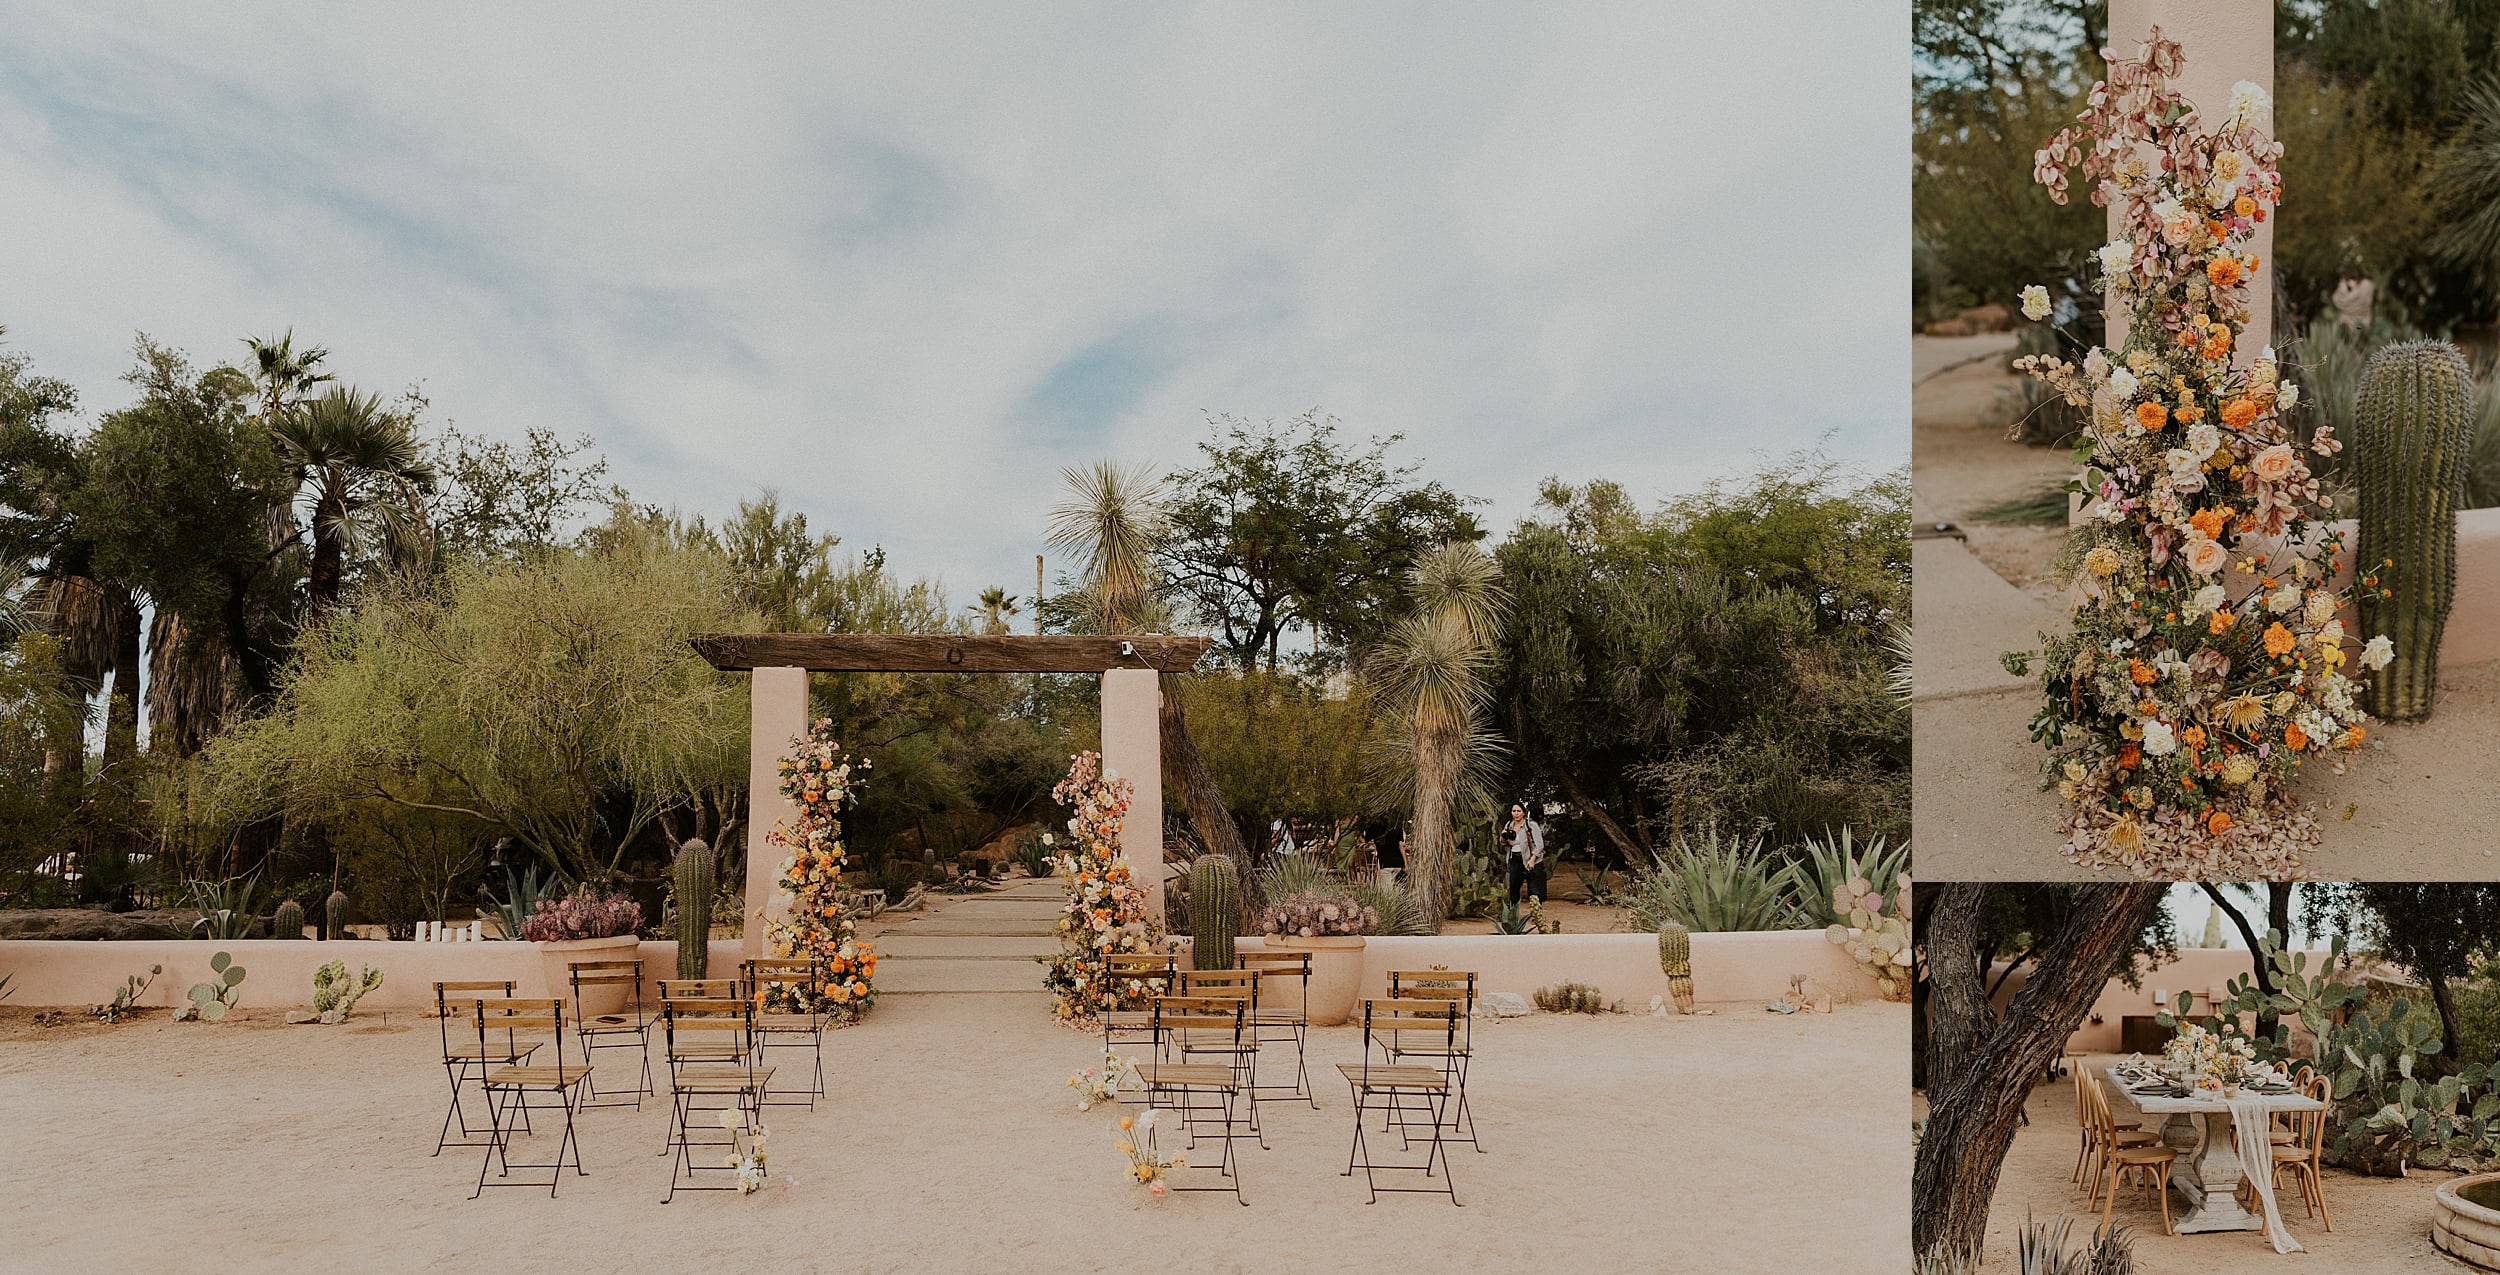 wedding ceremony set up desert landscape